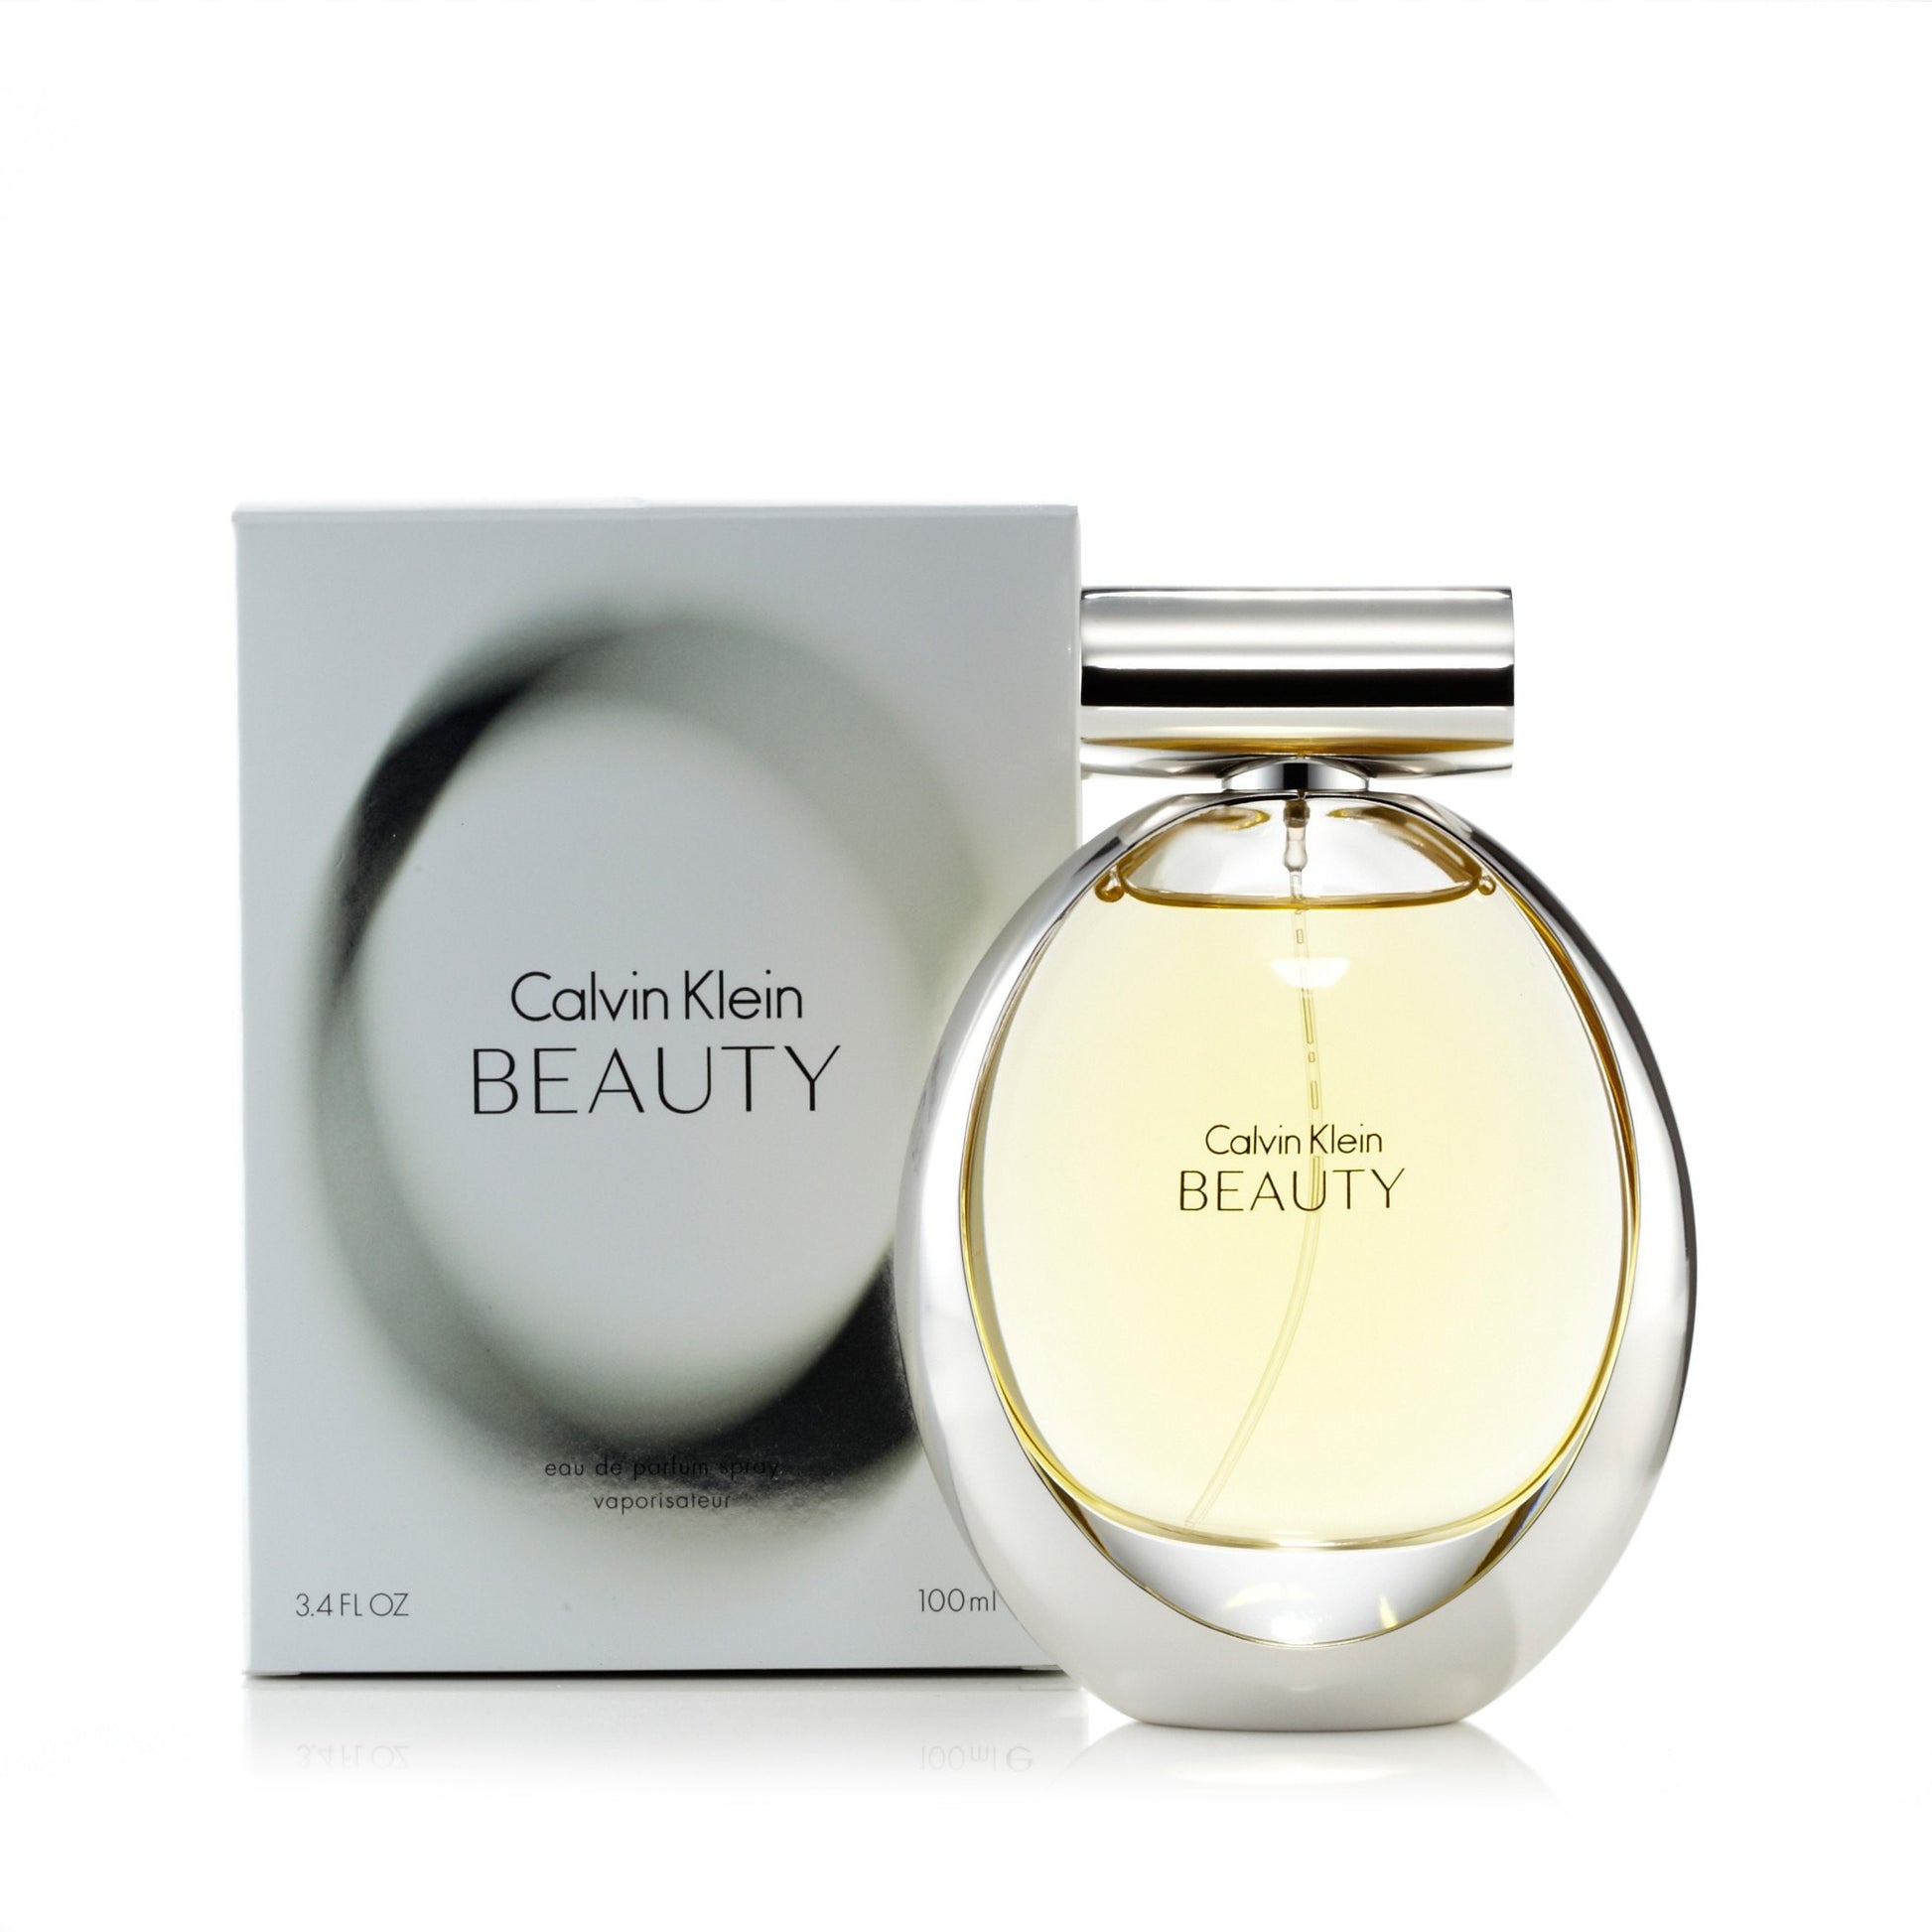 Beauty Eau de Parfum Spray for Women by Calvin Klein 3.4 oz. Click to open in modal